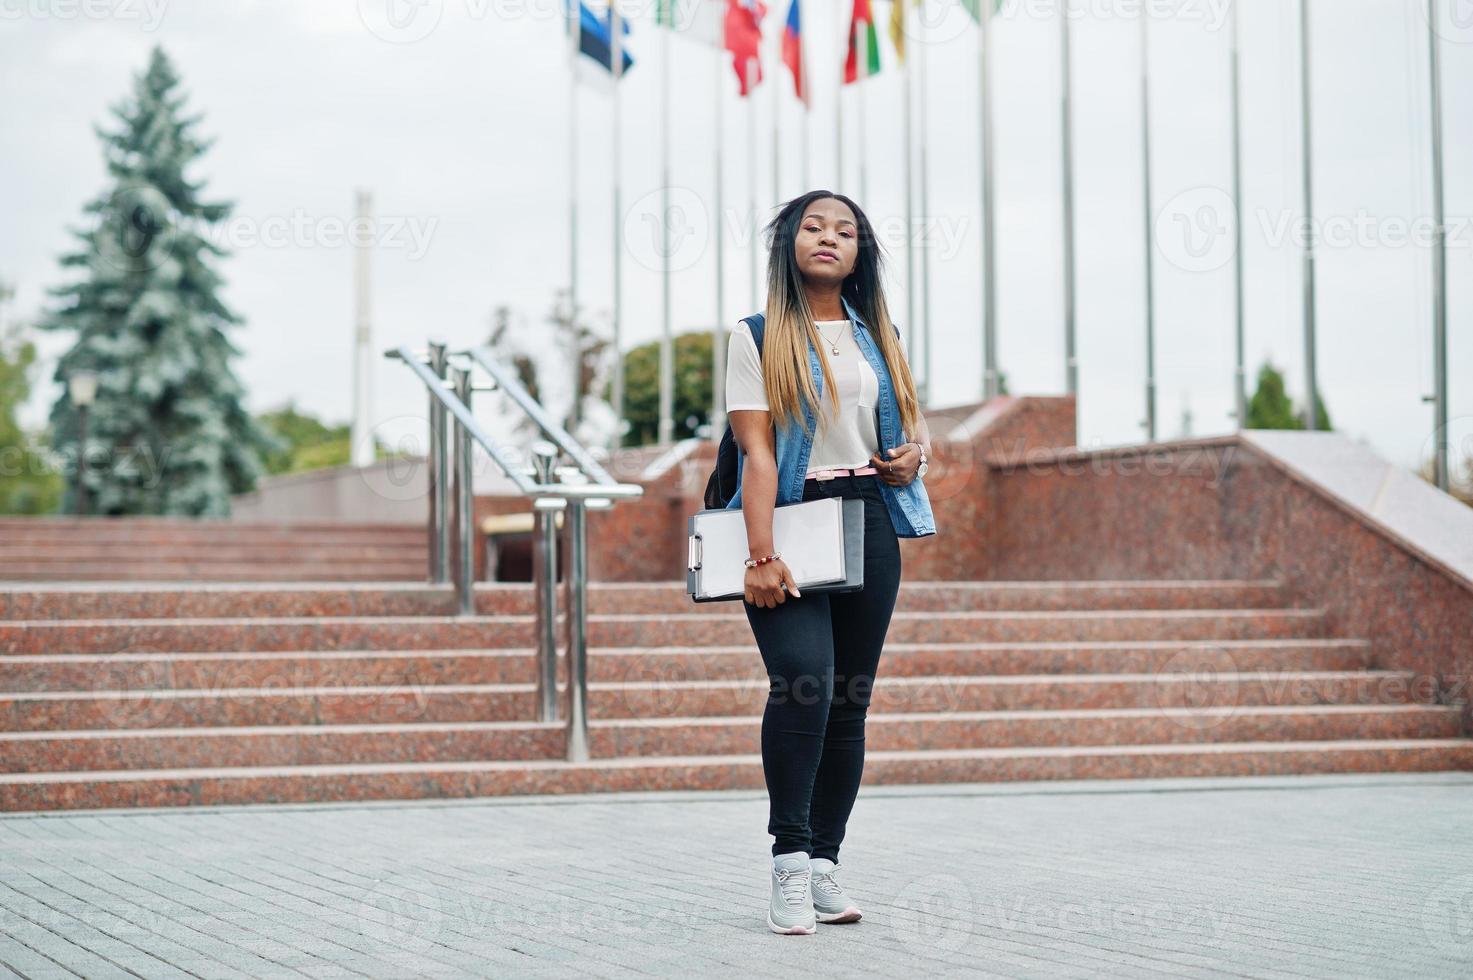 étudiante africaine posée avec sac à dos et articles scolaires sur la cour de l'université, contre les drapeaux de différents pays. photo